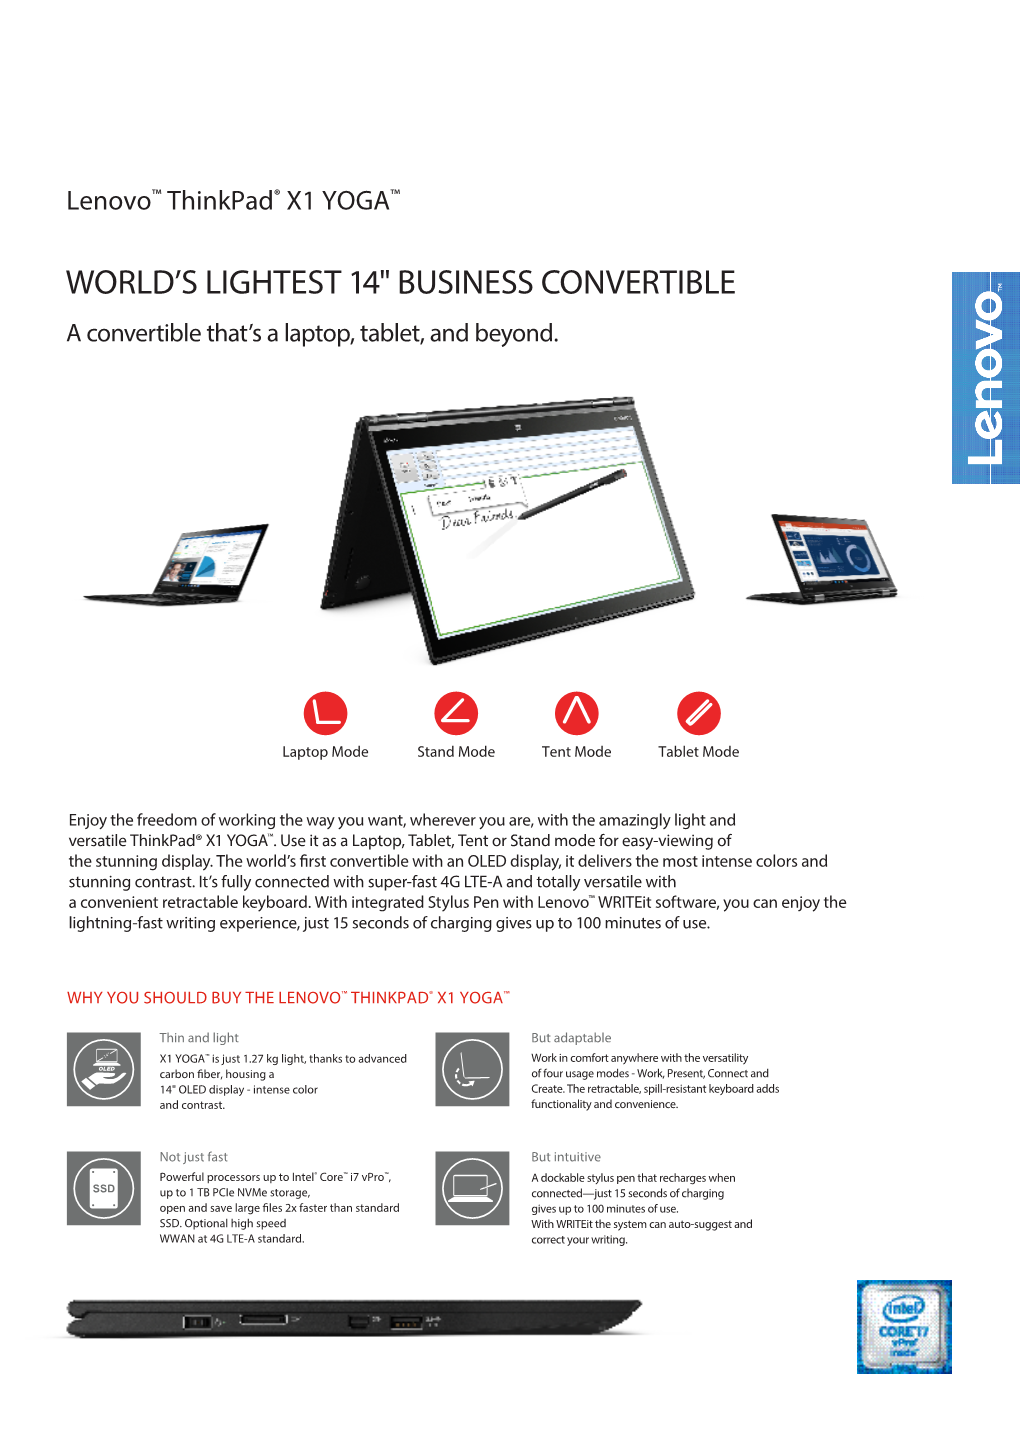 World's Lightest 14" Business Convertible